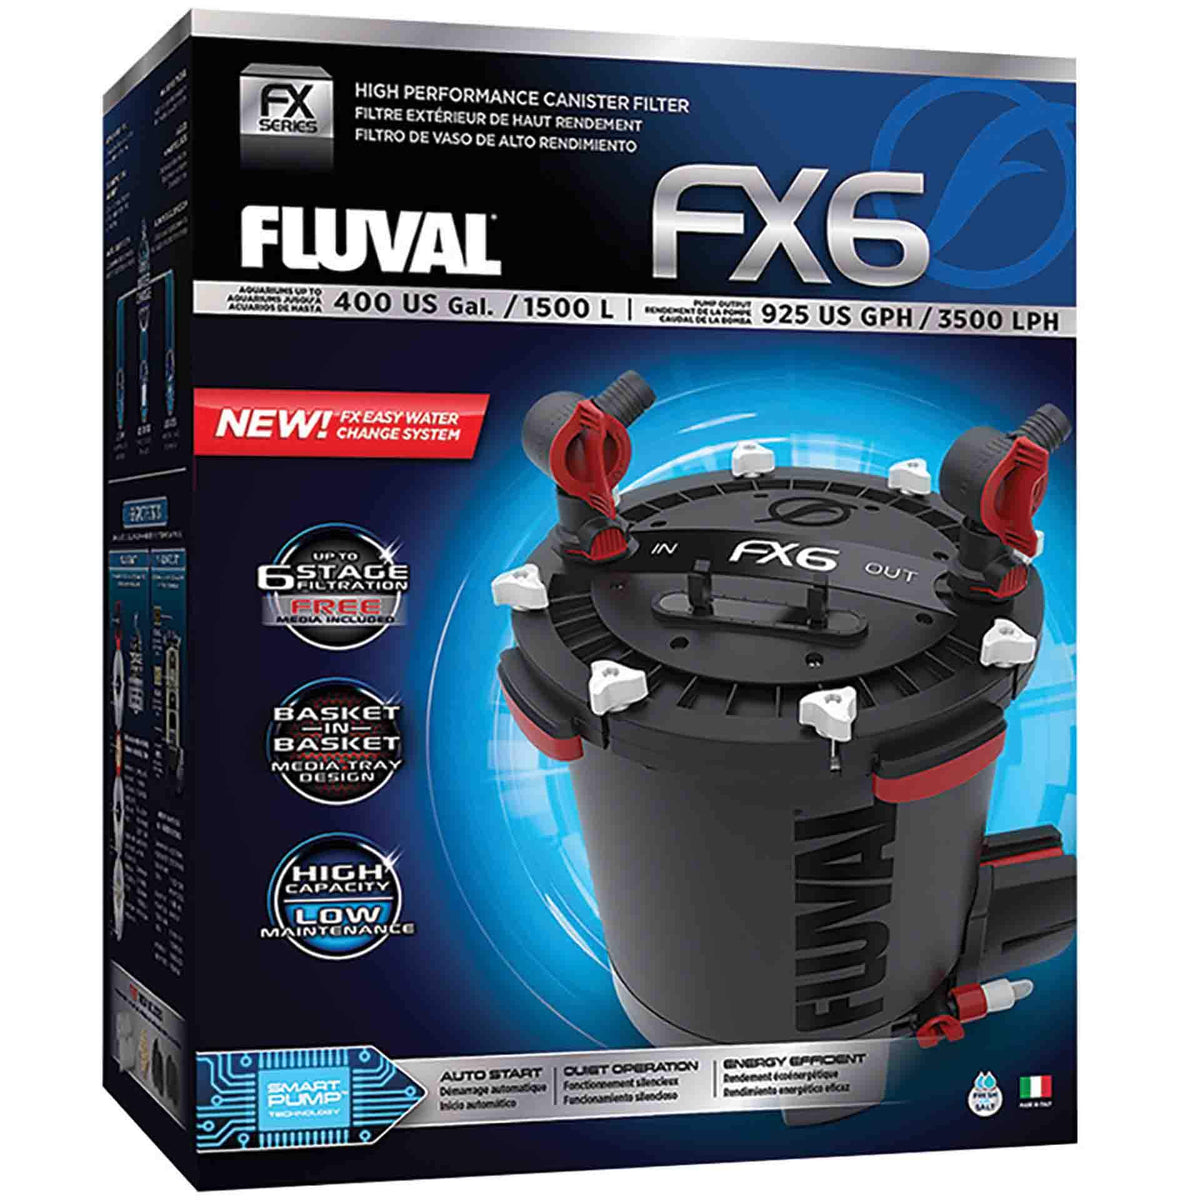 Fluval FX6 V2 Giant Canister Filter